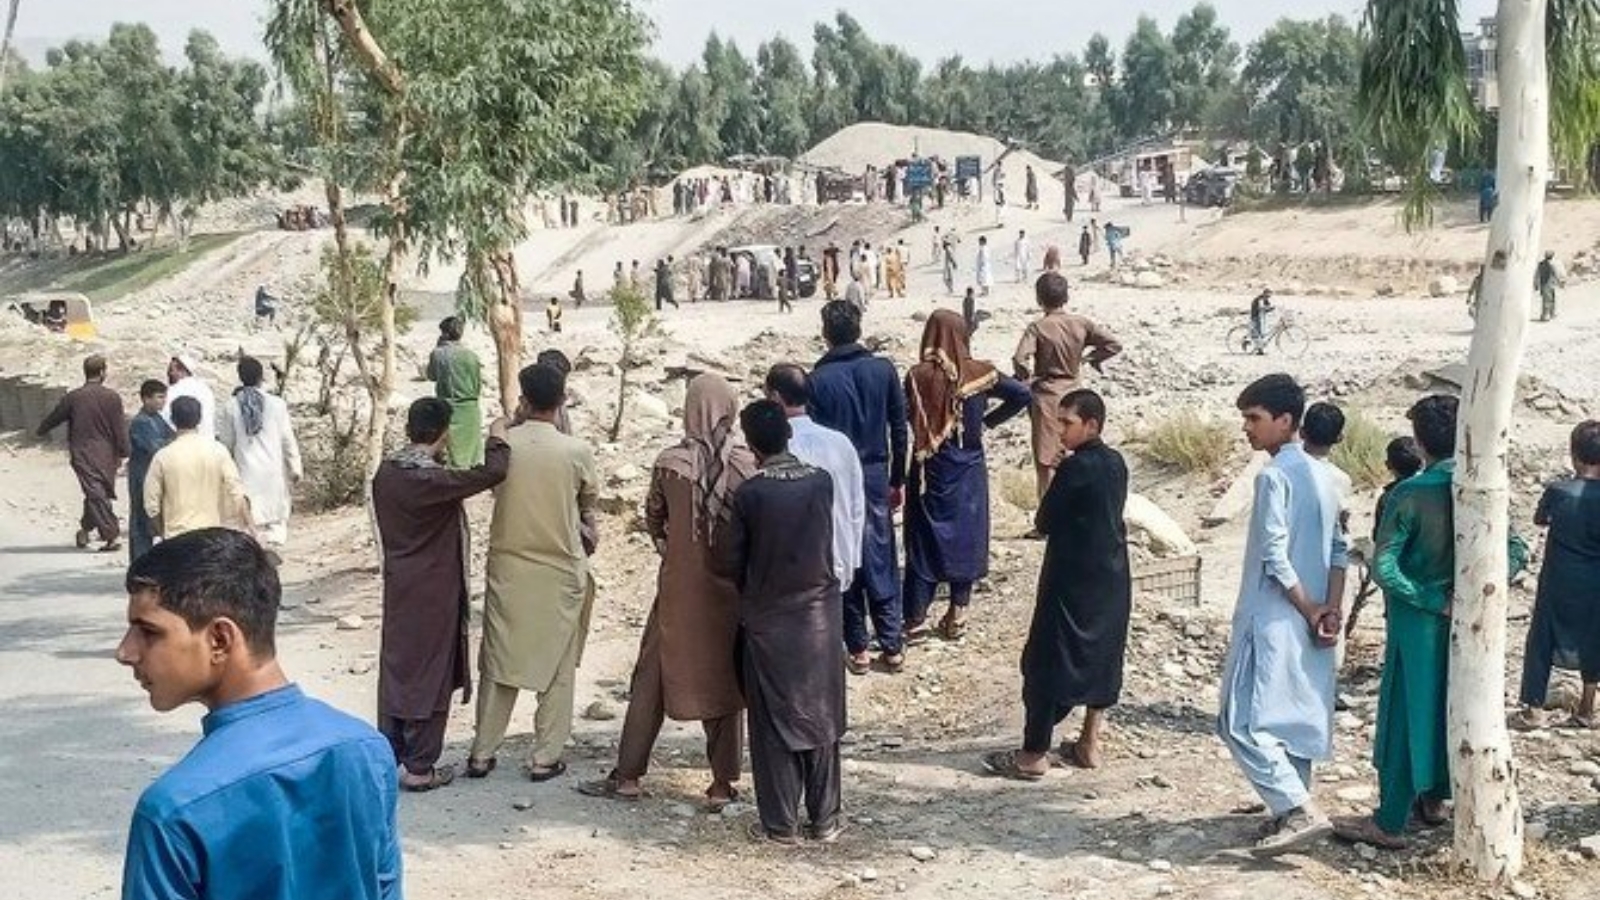 مدنيون في نقطة تفتيش لقوات النظام الجديد في جلال آباد بشرق أفغانستان. بتاريخ 22 أيلول/ سبتمبر 2021.